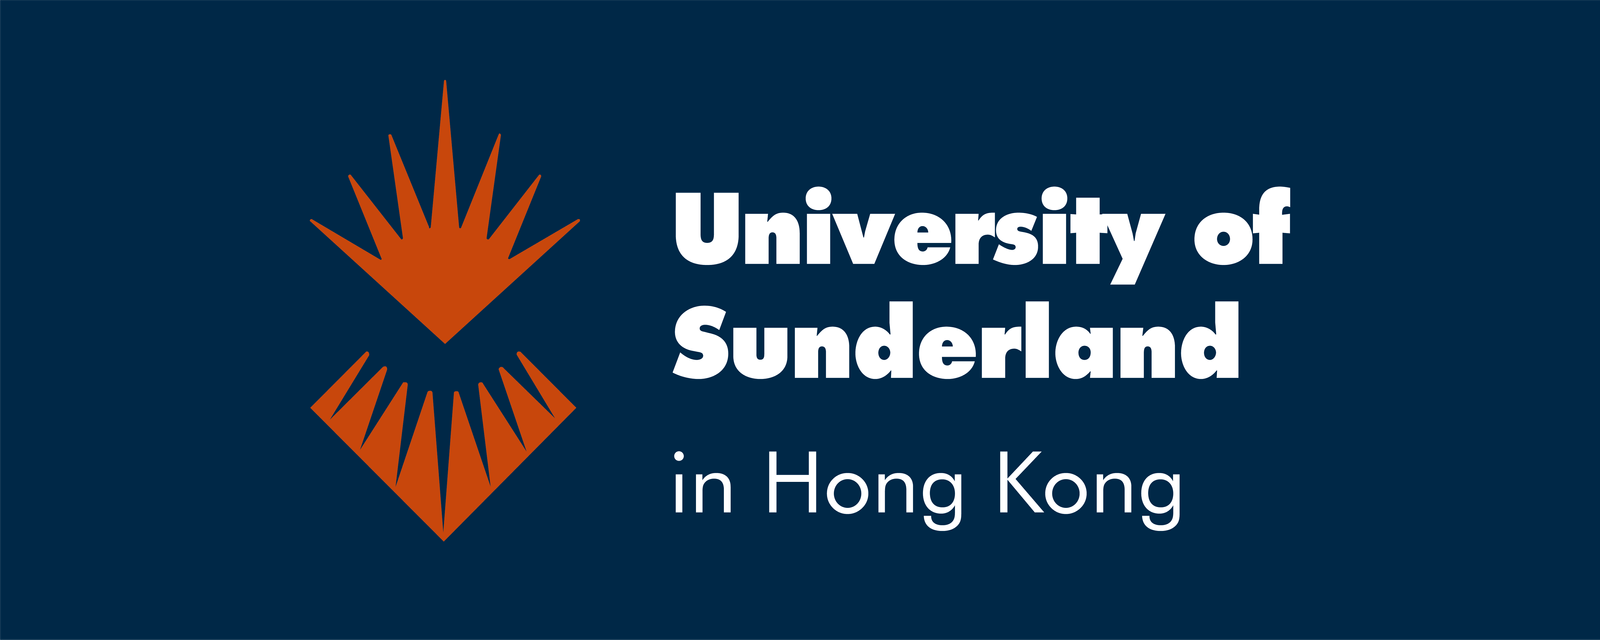 University of Sunderland in Hong Kong Logo